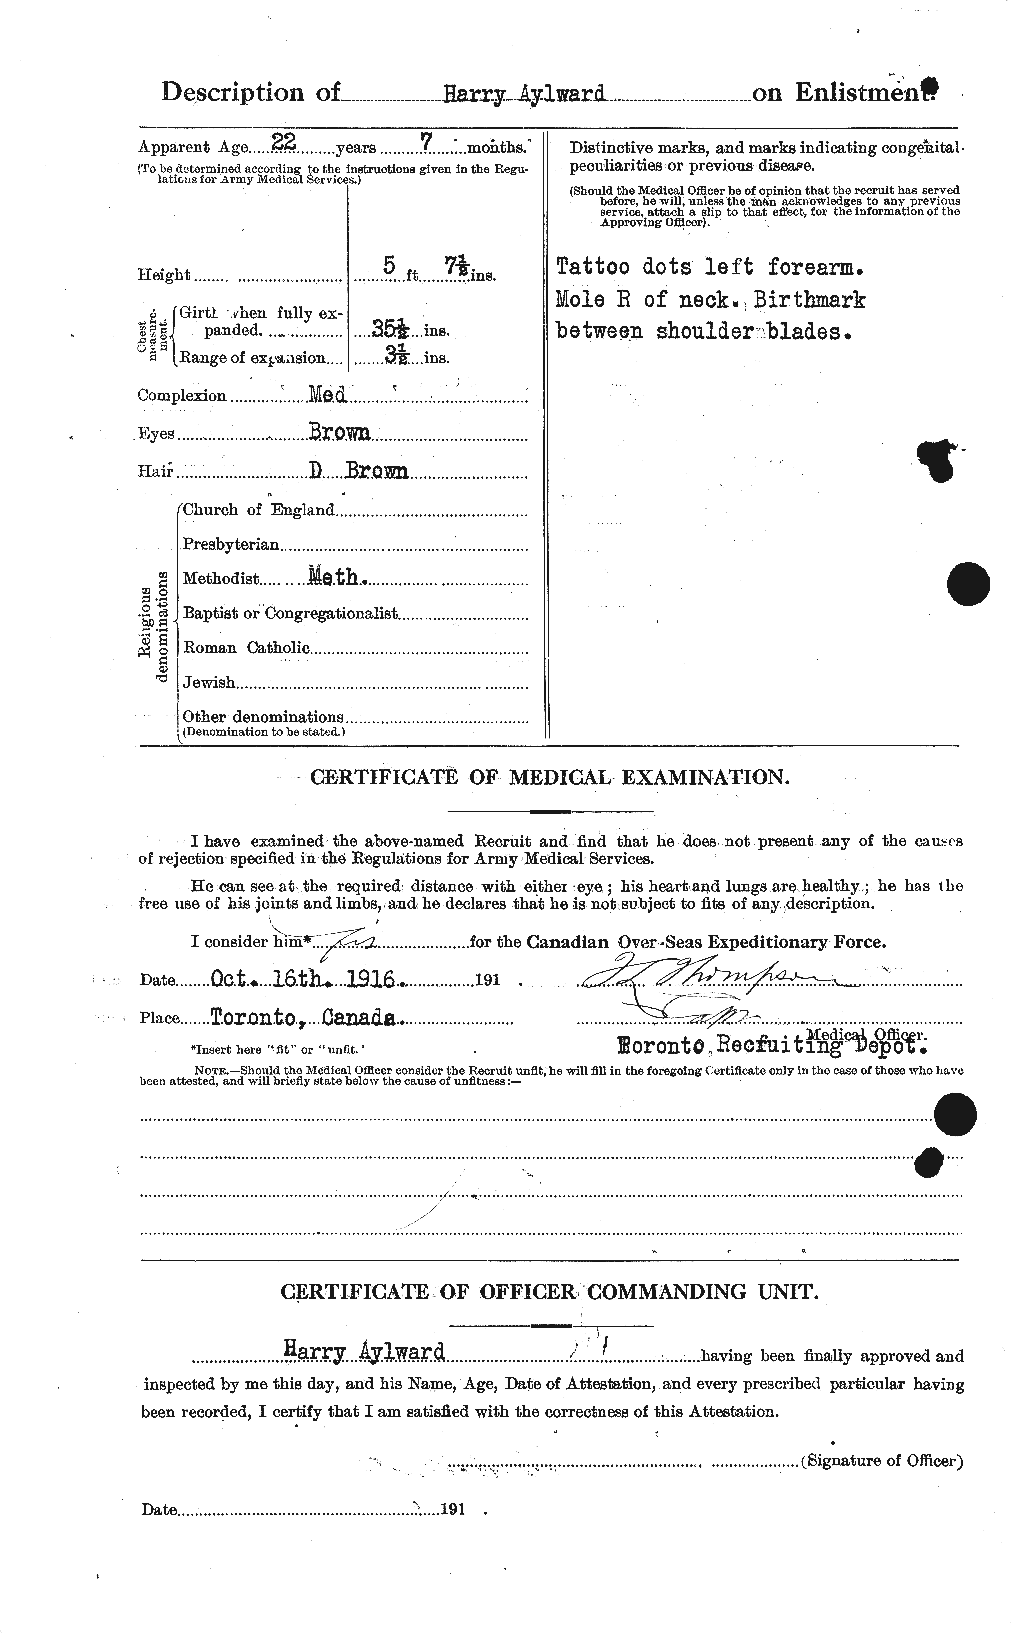 Dossiers du Personnel de la Première Guerre mondiale - CEC 215744b